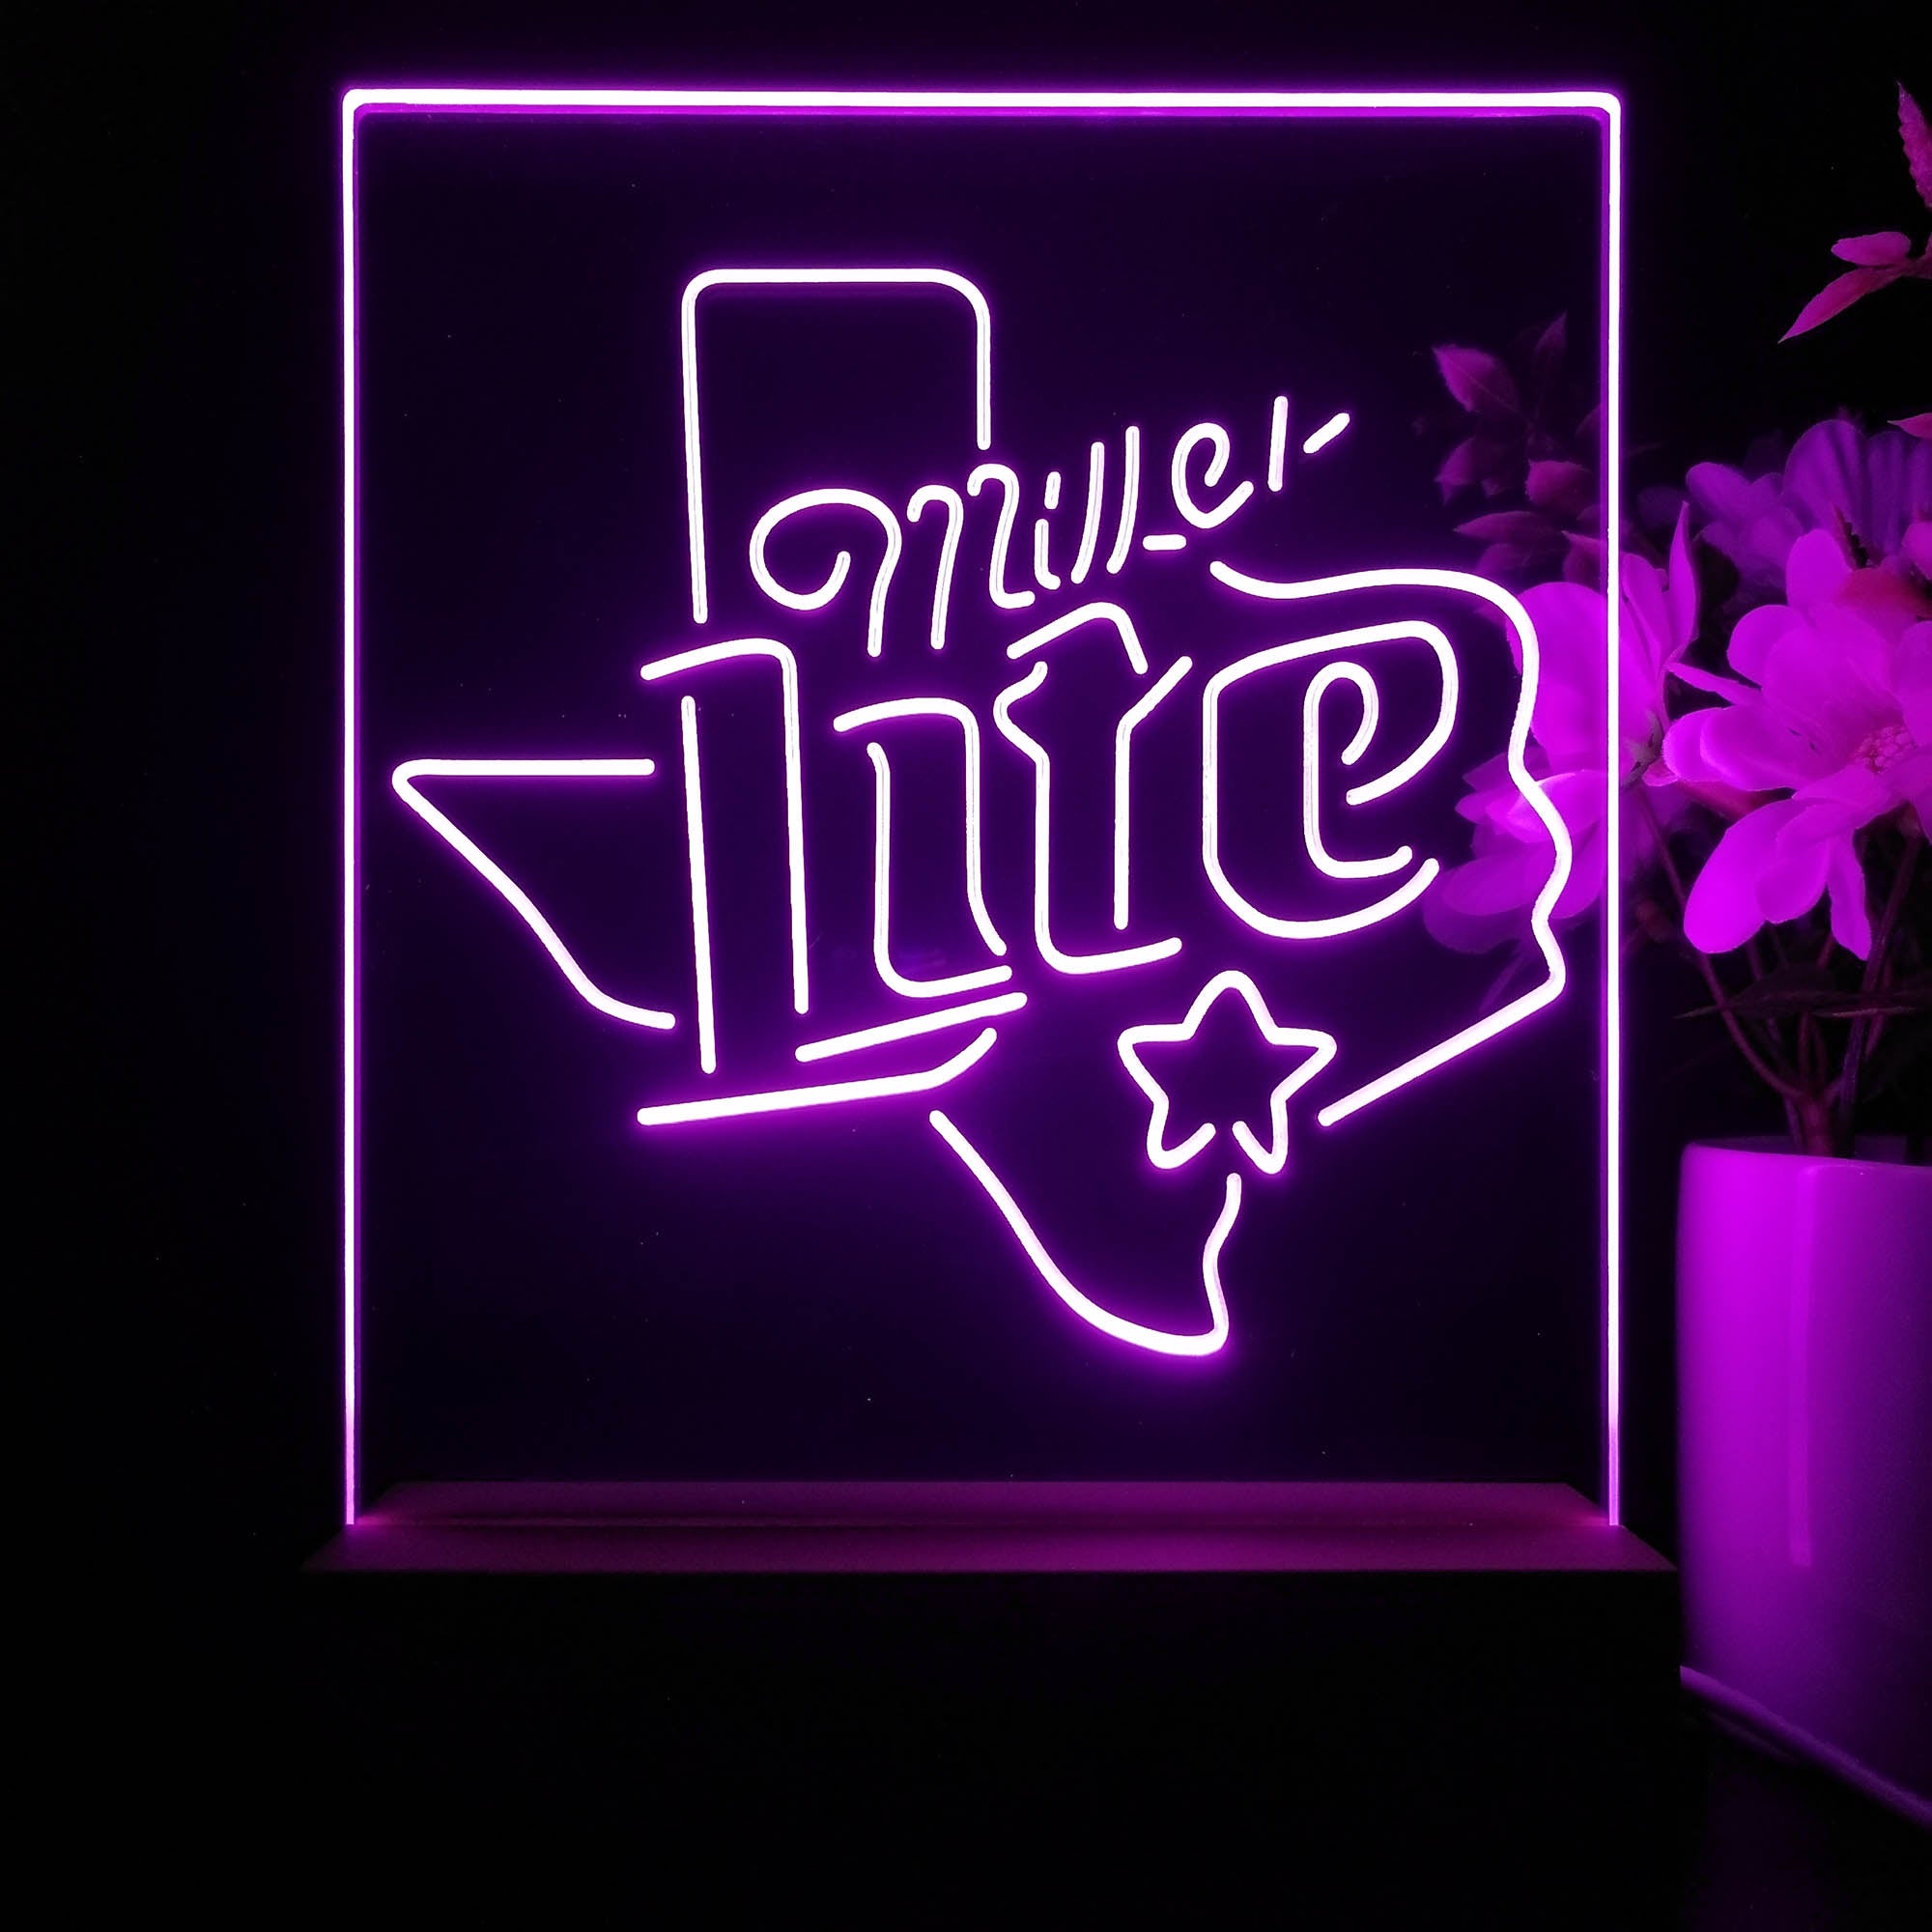 Miller Star Texas Beer 3D Illusion Night Light Desk Lamp